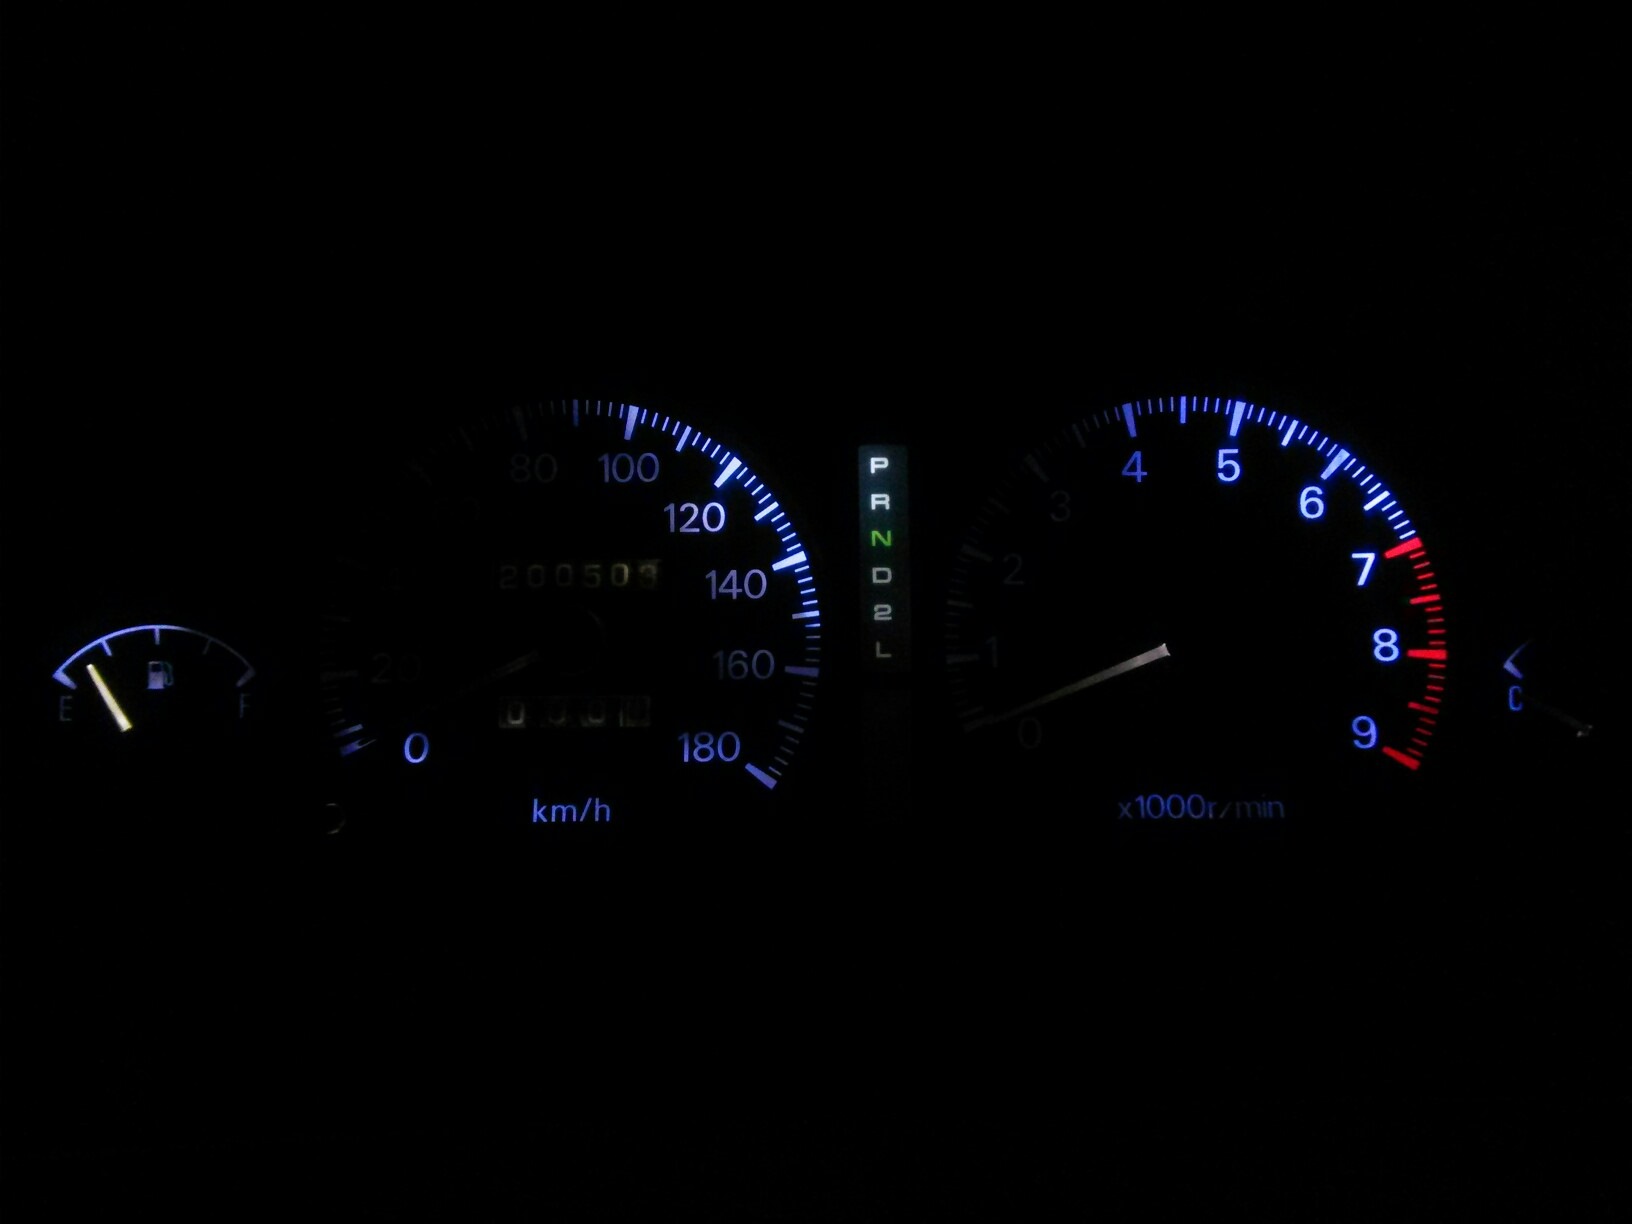 Рамка щитка приборов. Toyota Allion 240 подсветка приборов. Подсветка щитка приборов Маджентис 2009. Подсветка панели приборов Королла 120. Gx81 подсветка приборной панели.